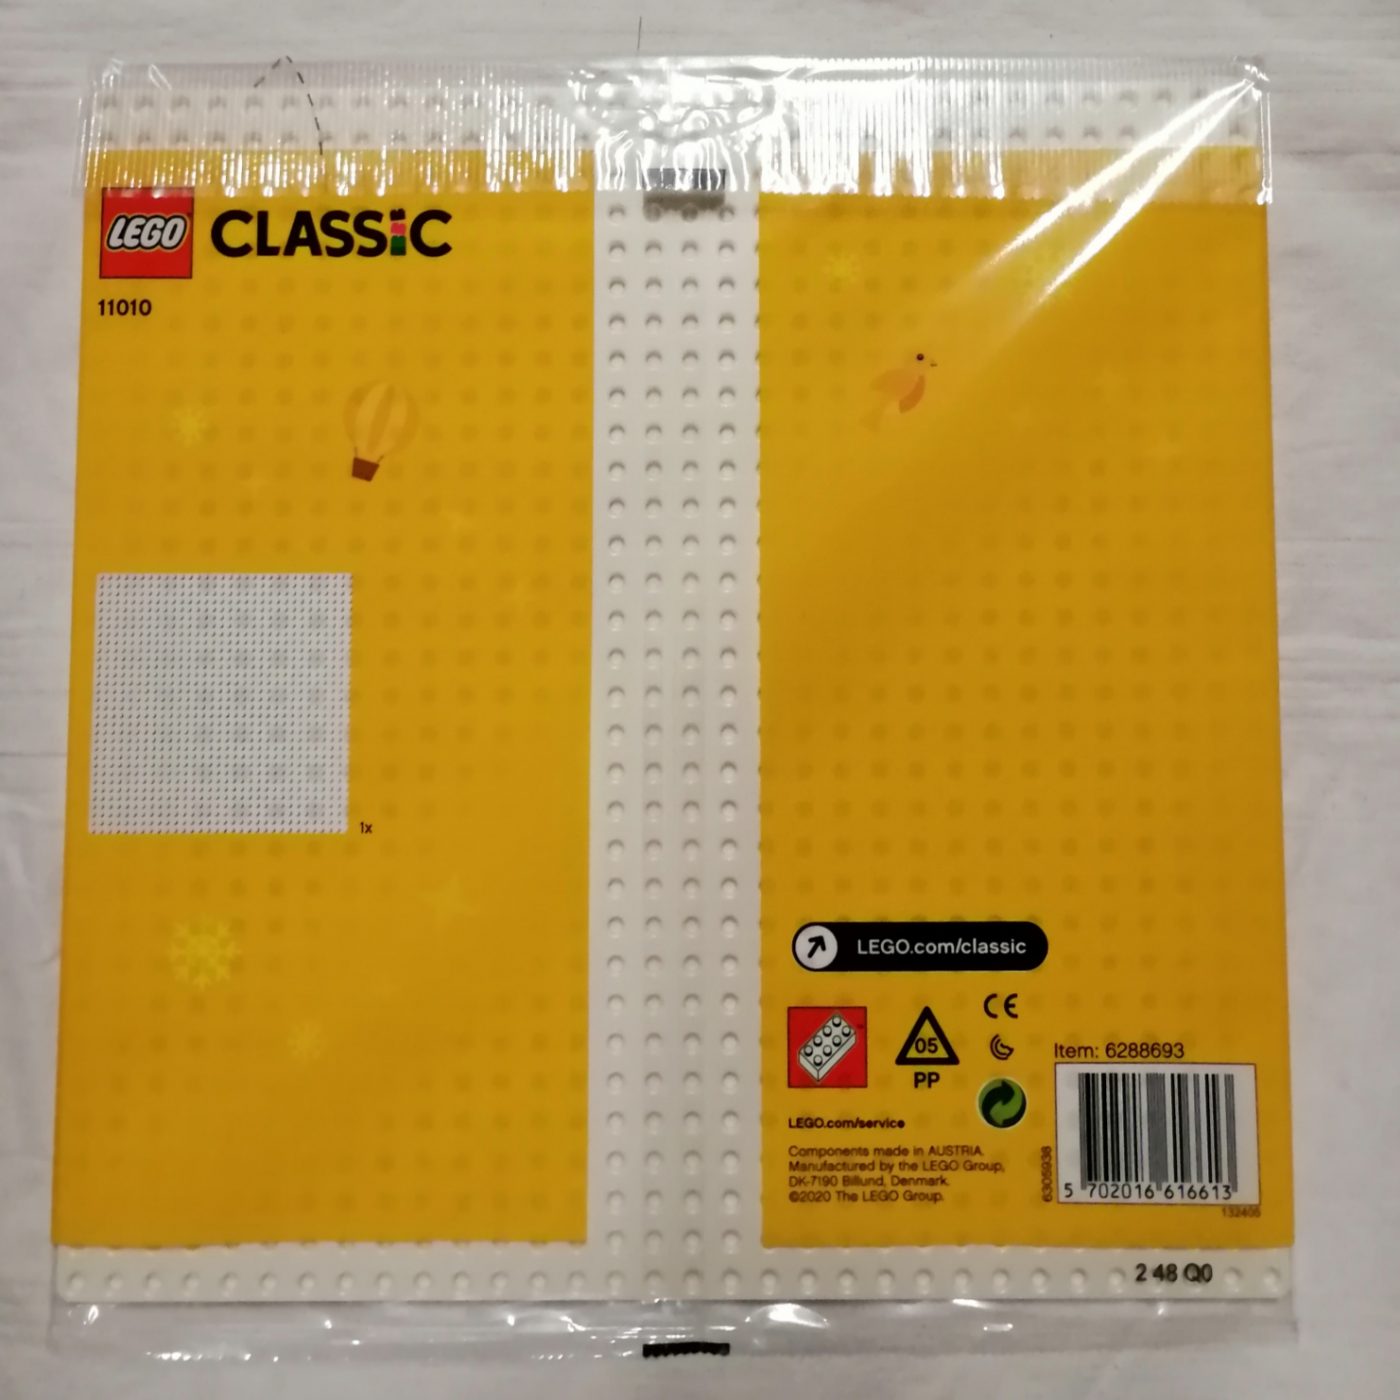 Lego Classic 11010 Weiße Bauplatte hinten